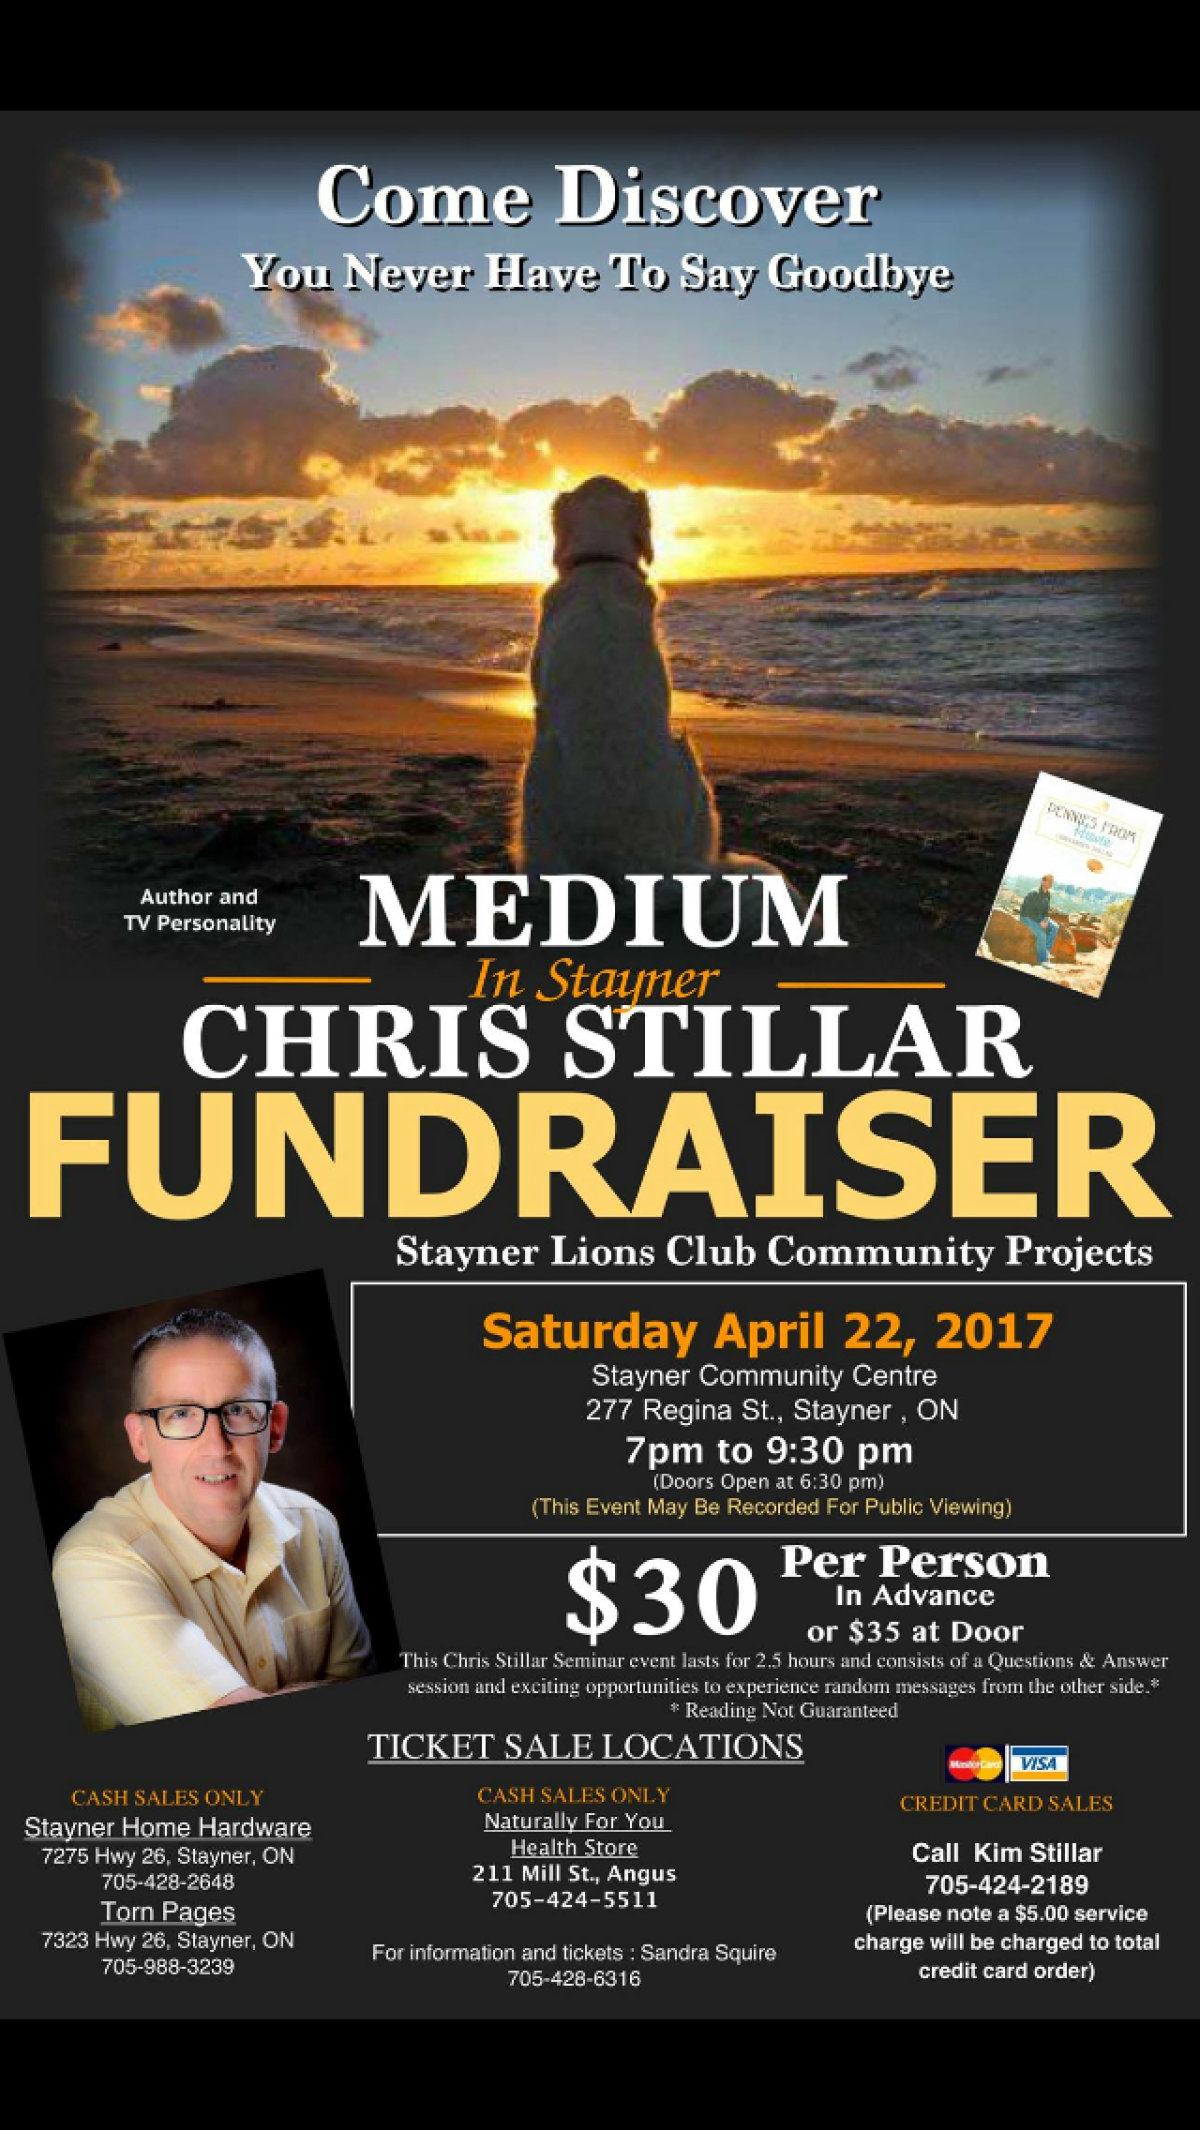 Medium Chris Stillar is coming to Stayner!!